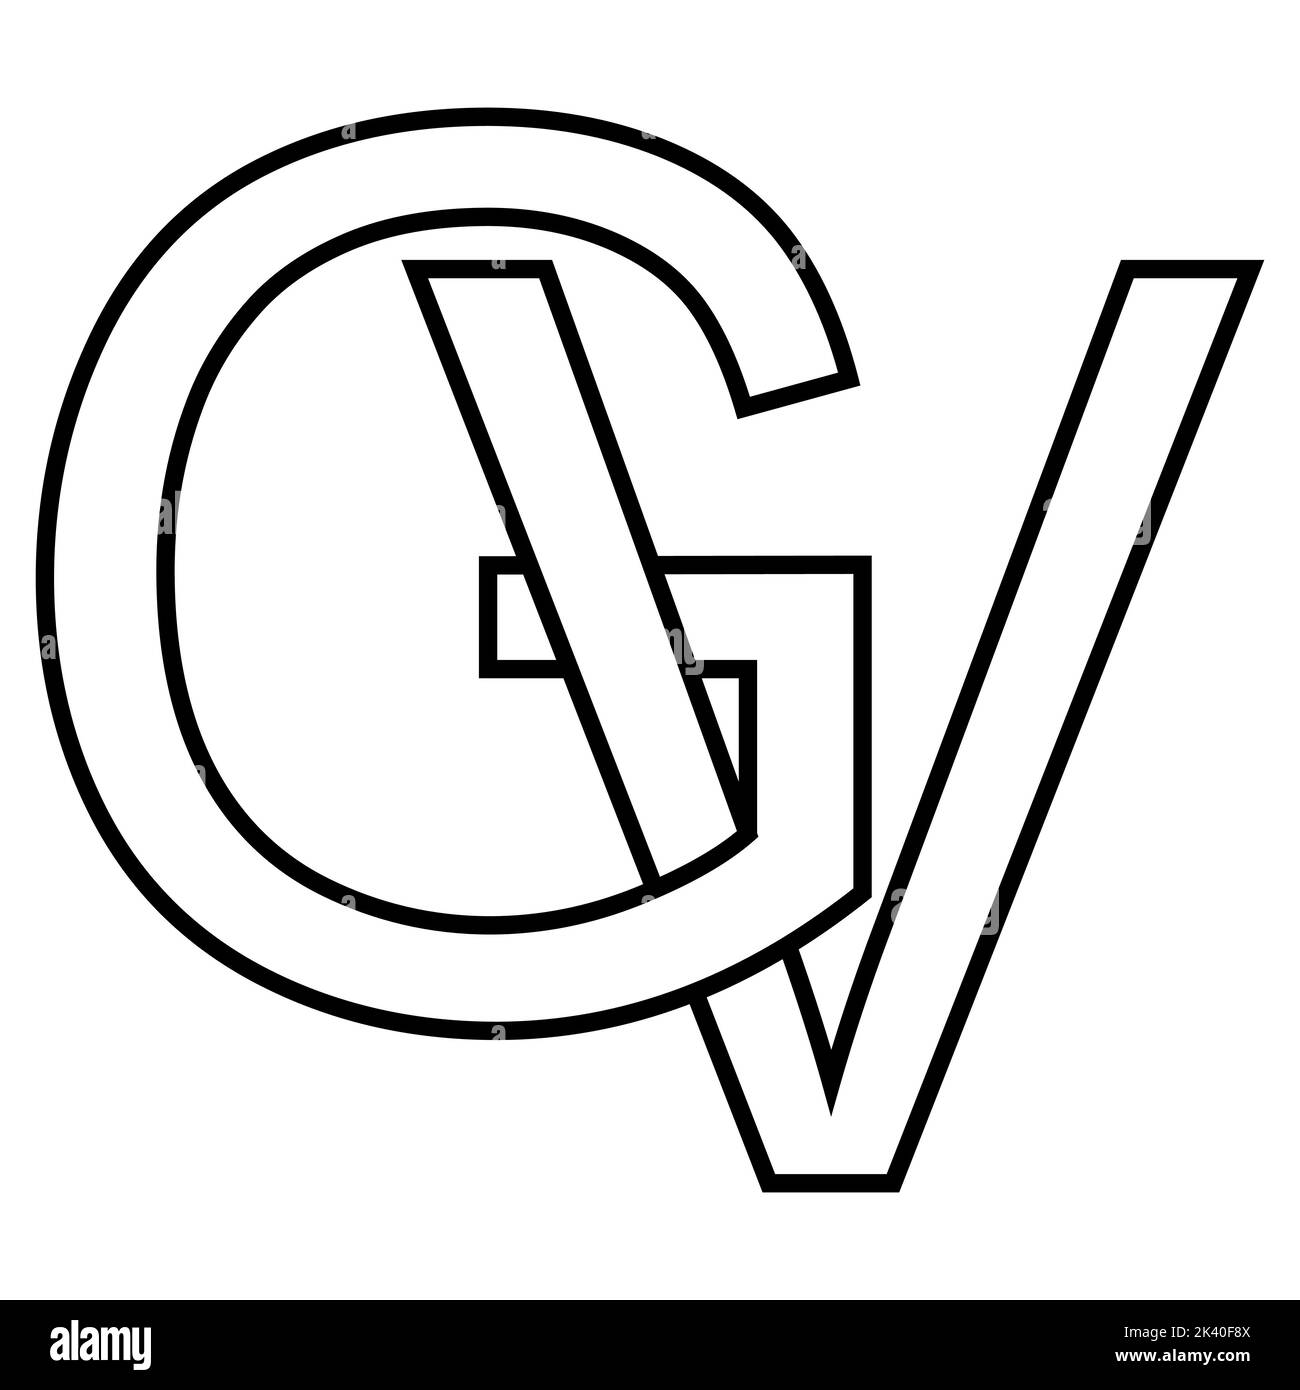 Logo sign gv vg icon, nft interlaced letters g v Stock Vector